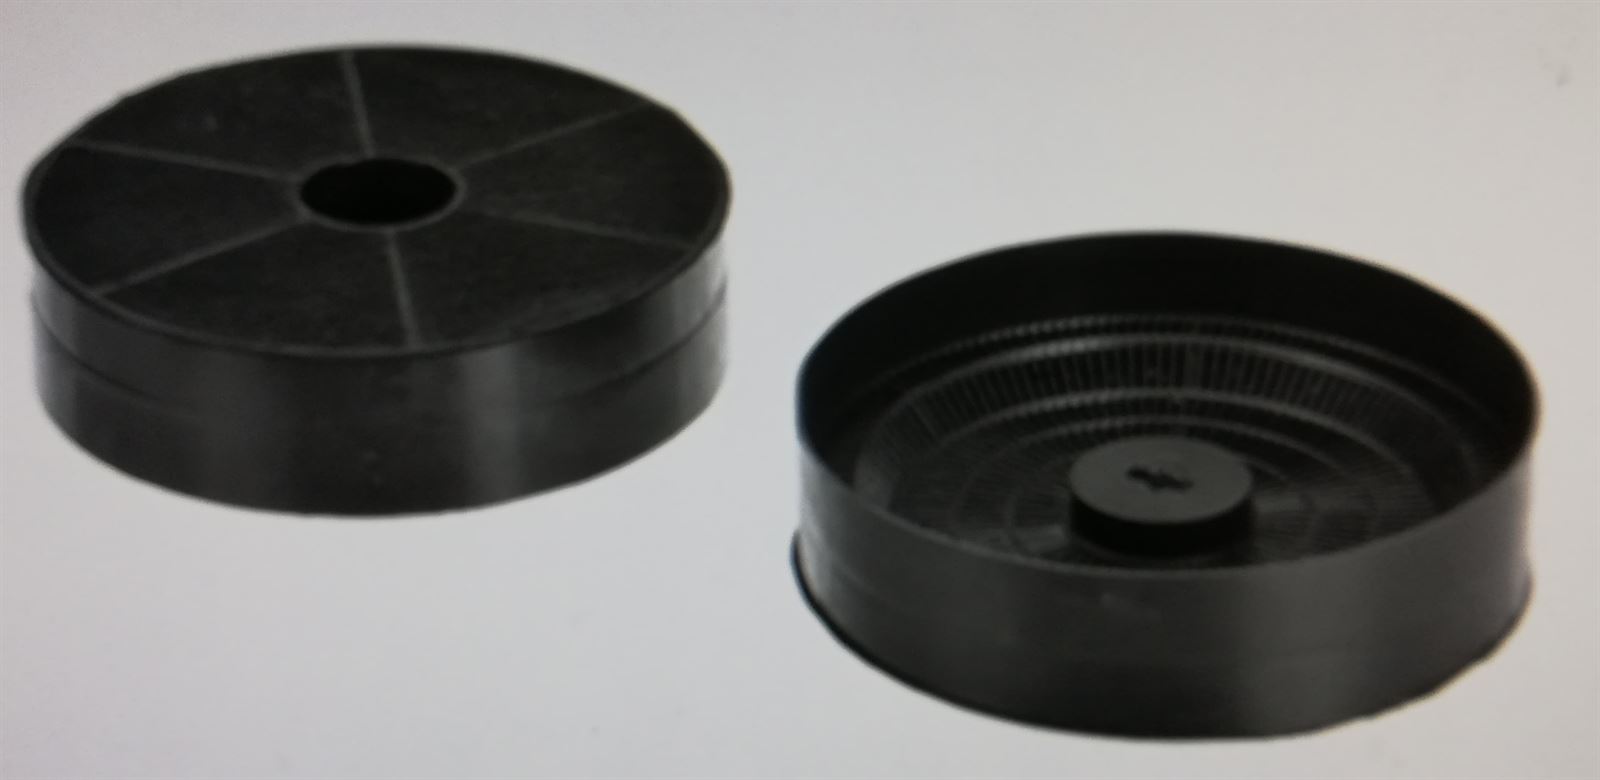 Filtro carbón campana Bosch Ø174x45mm, 1 unidad, CALIDAD ORIGINAL, 00602799 - Imagen 1